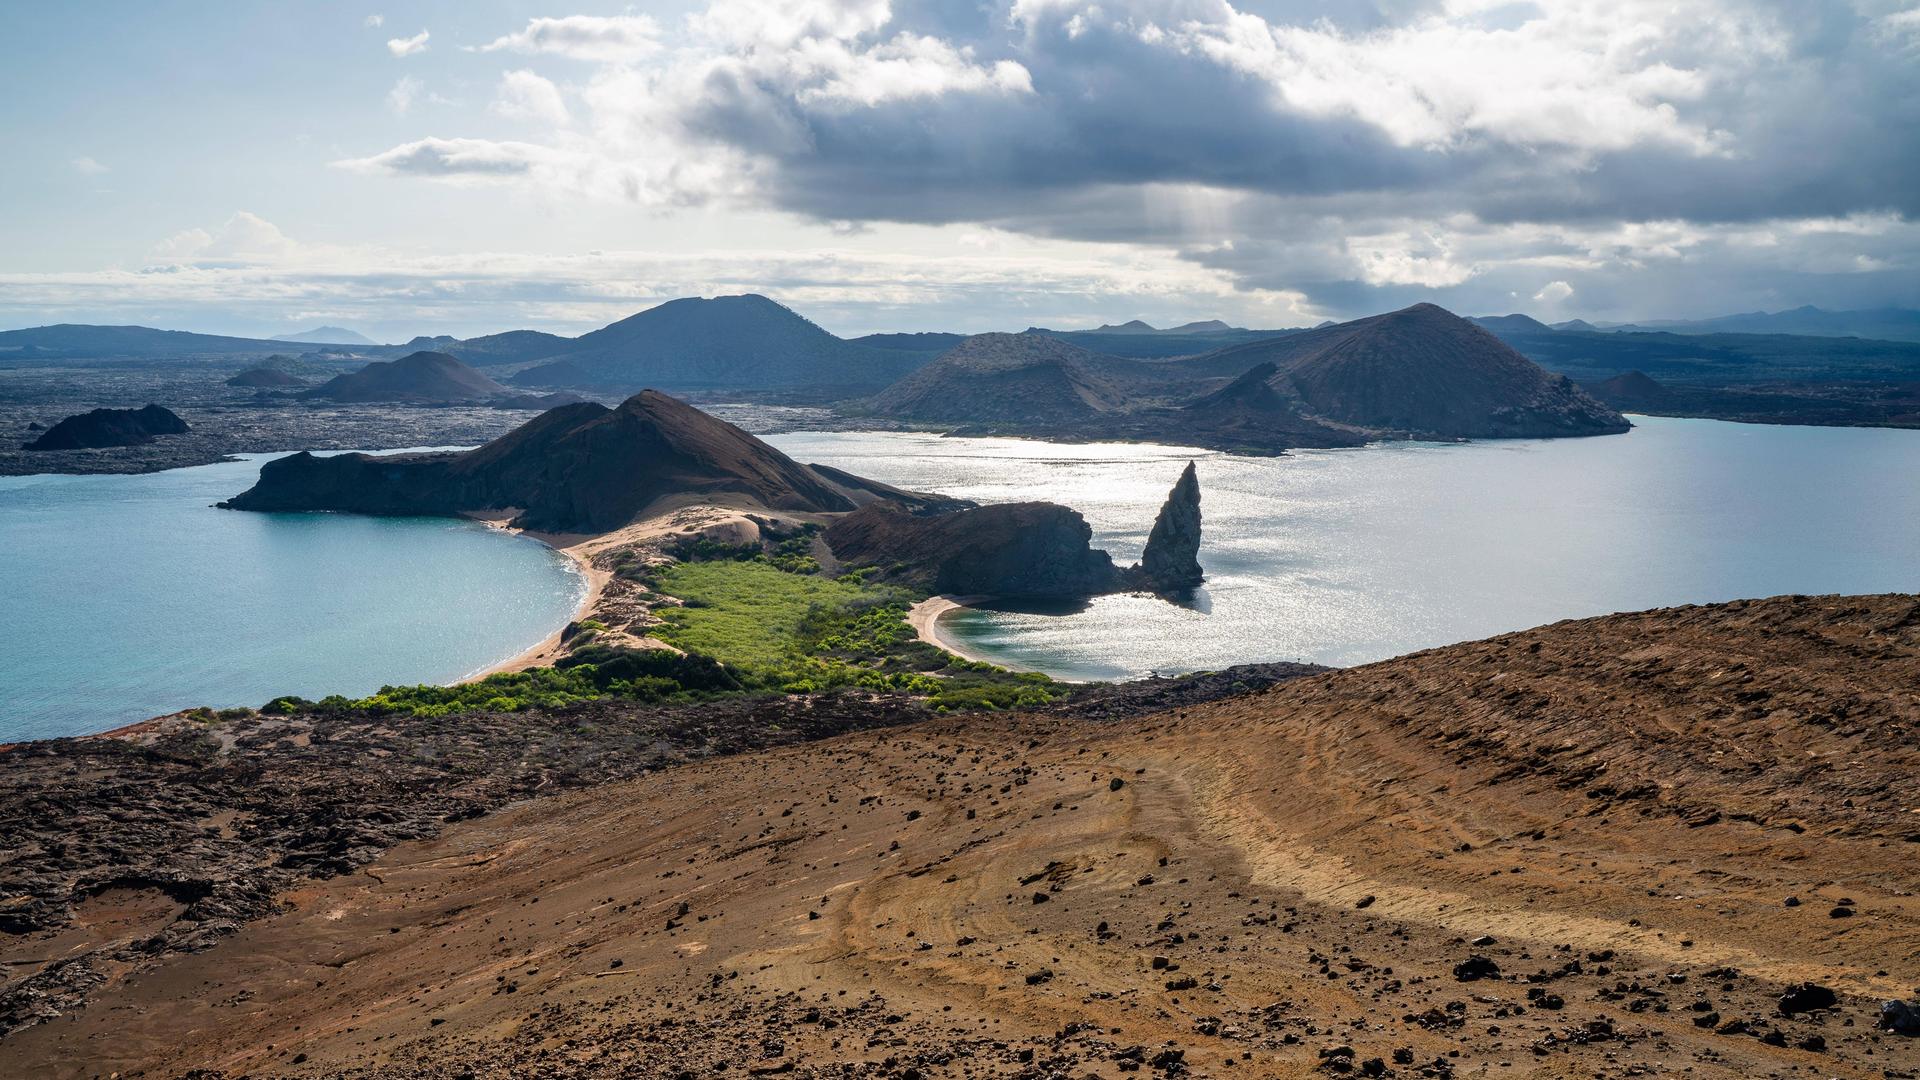 Ansicht auf Puerto Ayora auf den Galapagosinseln: Eine kleine Stadt am Meer, umgeben von Bergen.